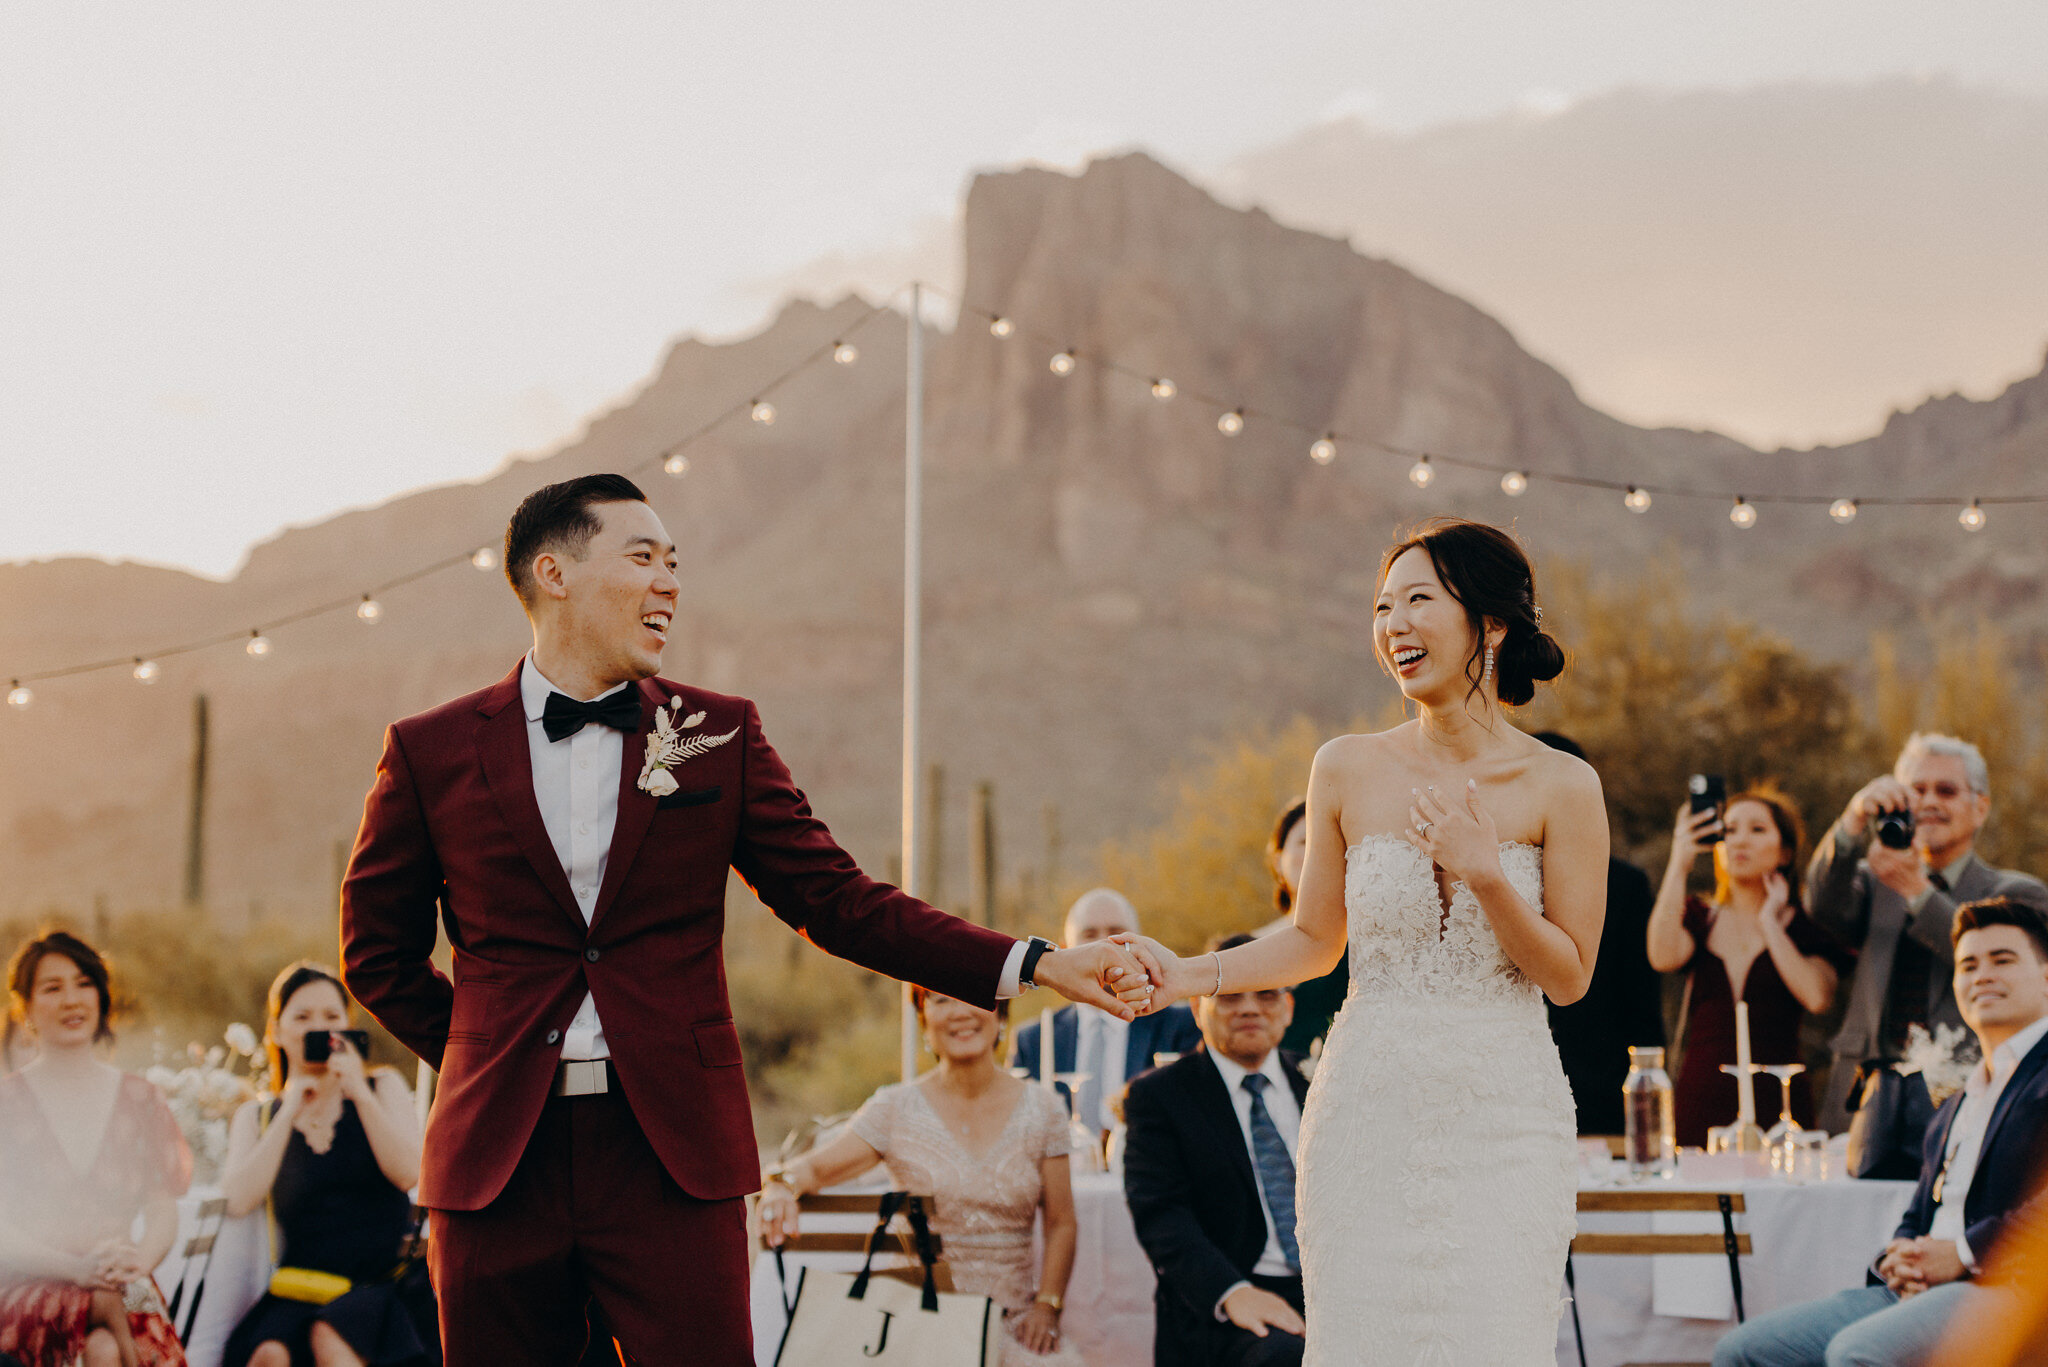 california wedding photograhers - desert elopement - supersition mountains - isaiahandtaylor.com-101.jpg